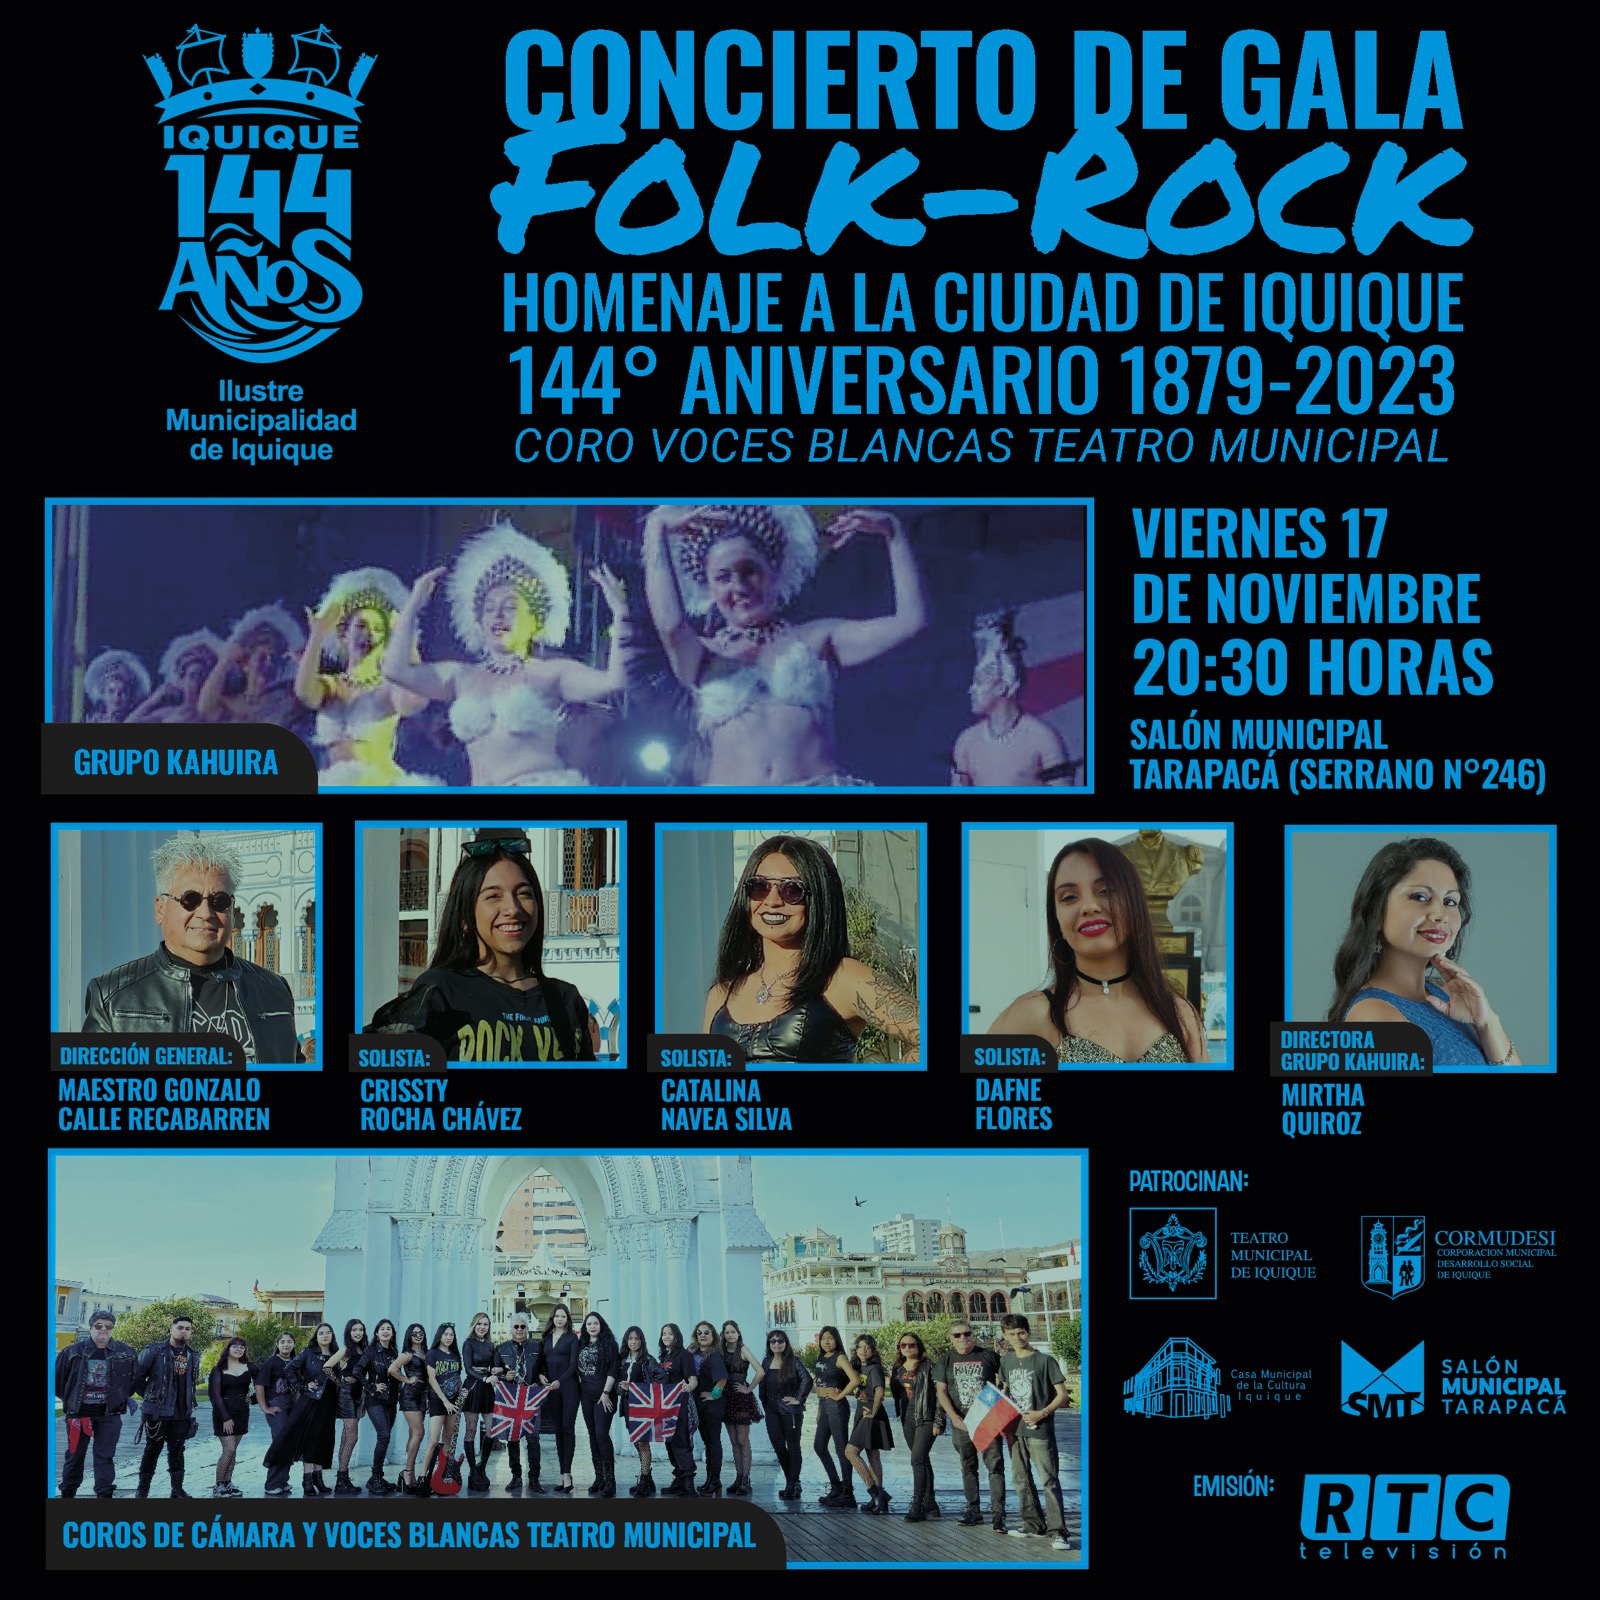 Concierto de Gala Folk-Rock Iquique